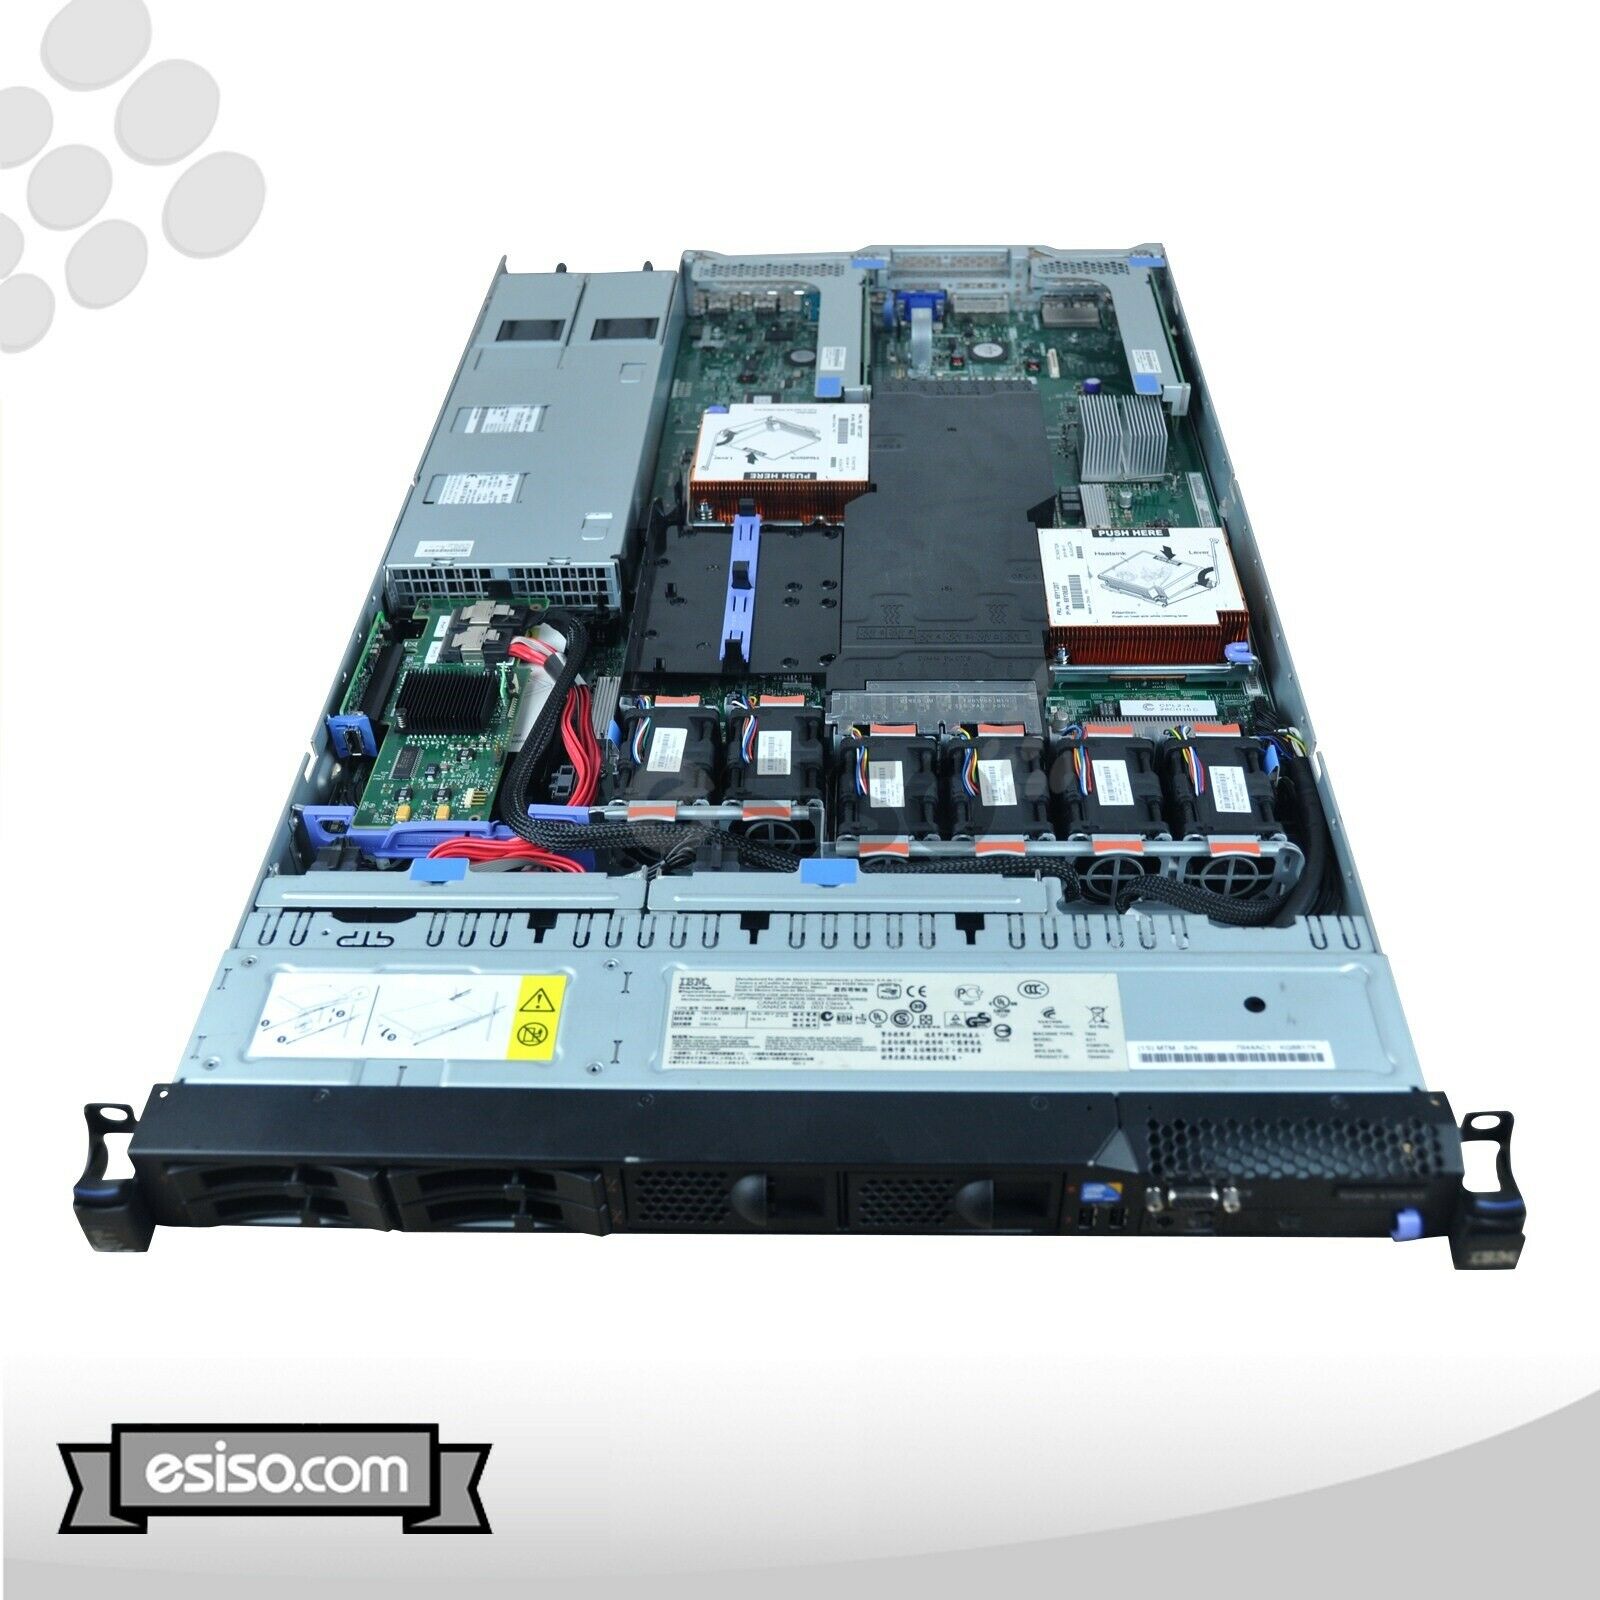 IBM System x3550 M3 7944-AC1 2x SIX CORE X5650 2.66GHz 48GB RAM 4x 900GB 10K SAS